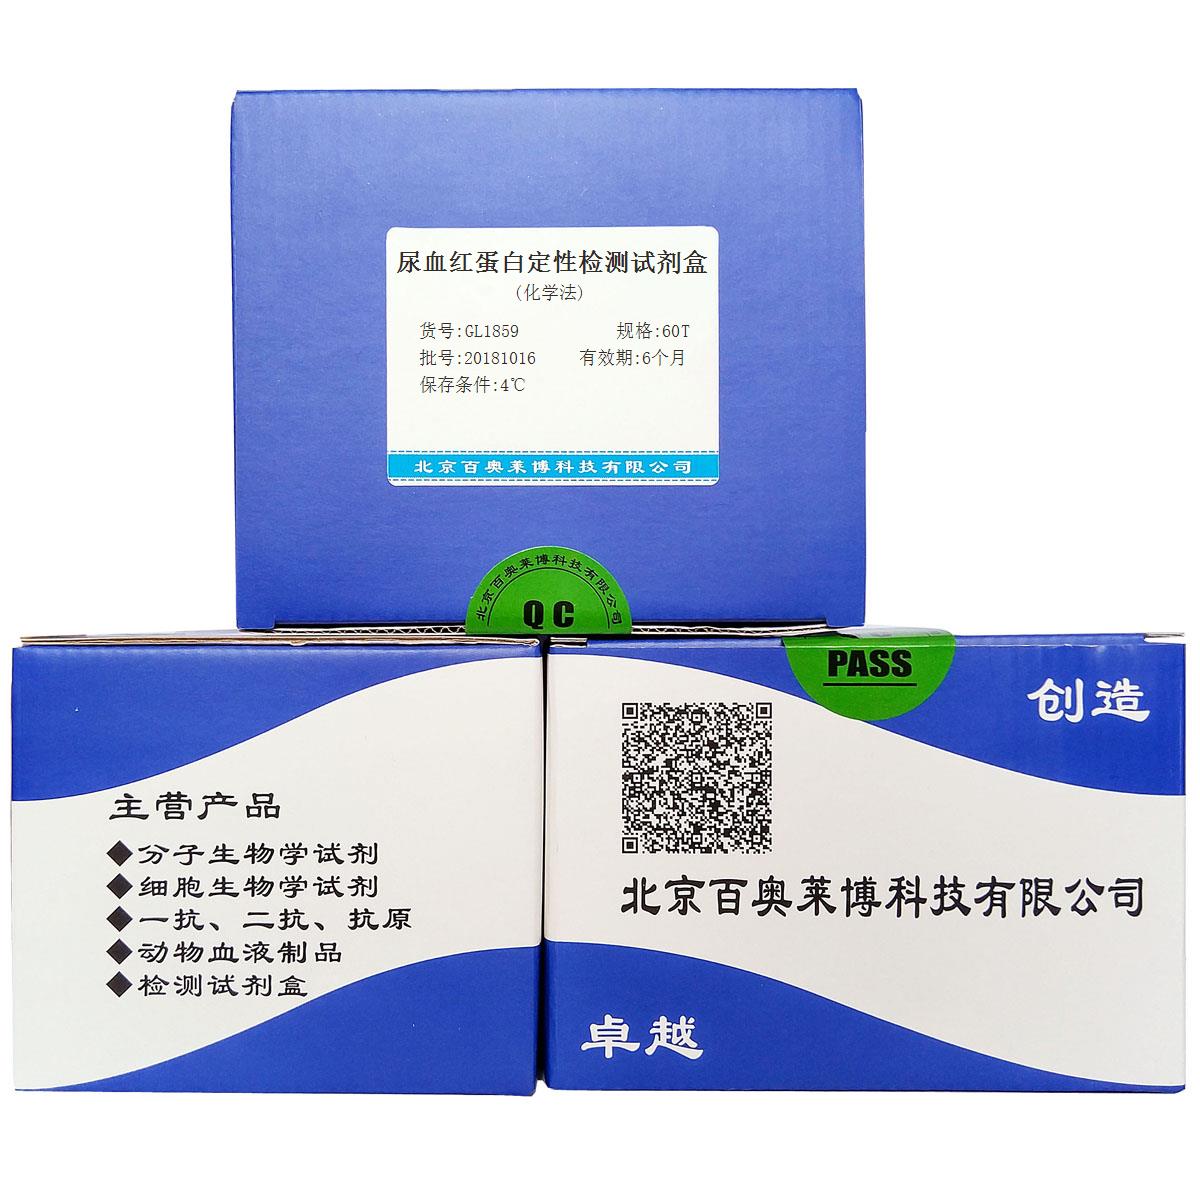 尿血红蛋白定性检测试剂盒(化学法)